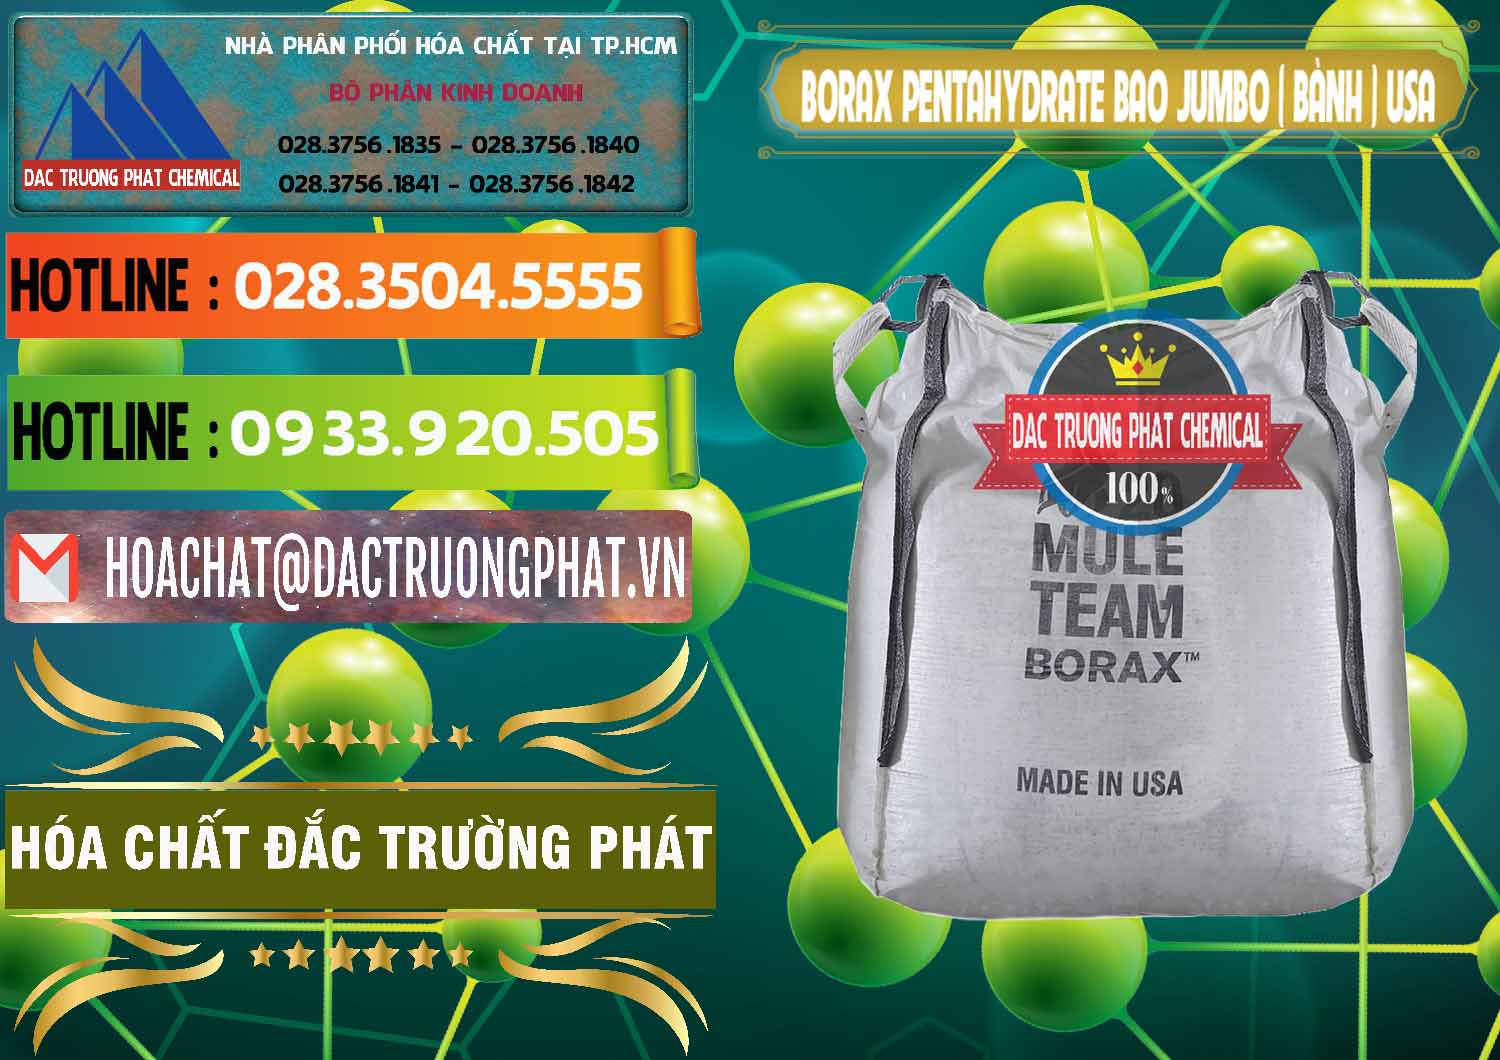 Cty cung cấp và bán Borax Pentahydrate Bao Jumbo ( Bành ) Mule 20 Team Mỹ Usa - 0278 - Công ty chuyên cung cấp _ bán hóa chất tại TP.HCM - cungcaphoachat.com.vn